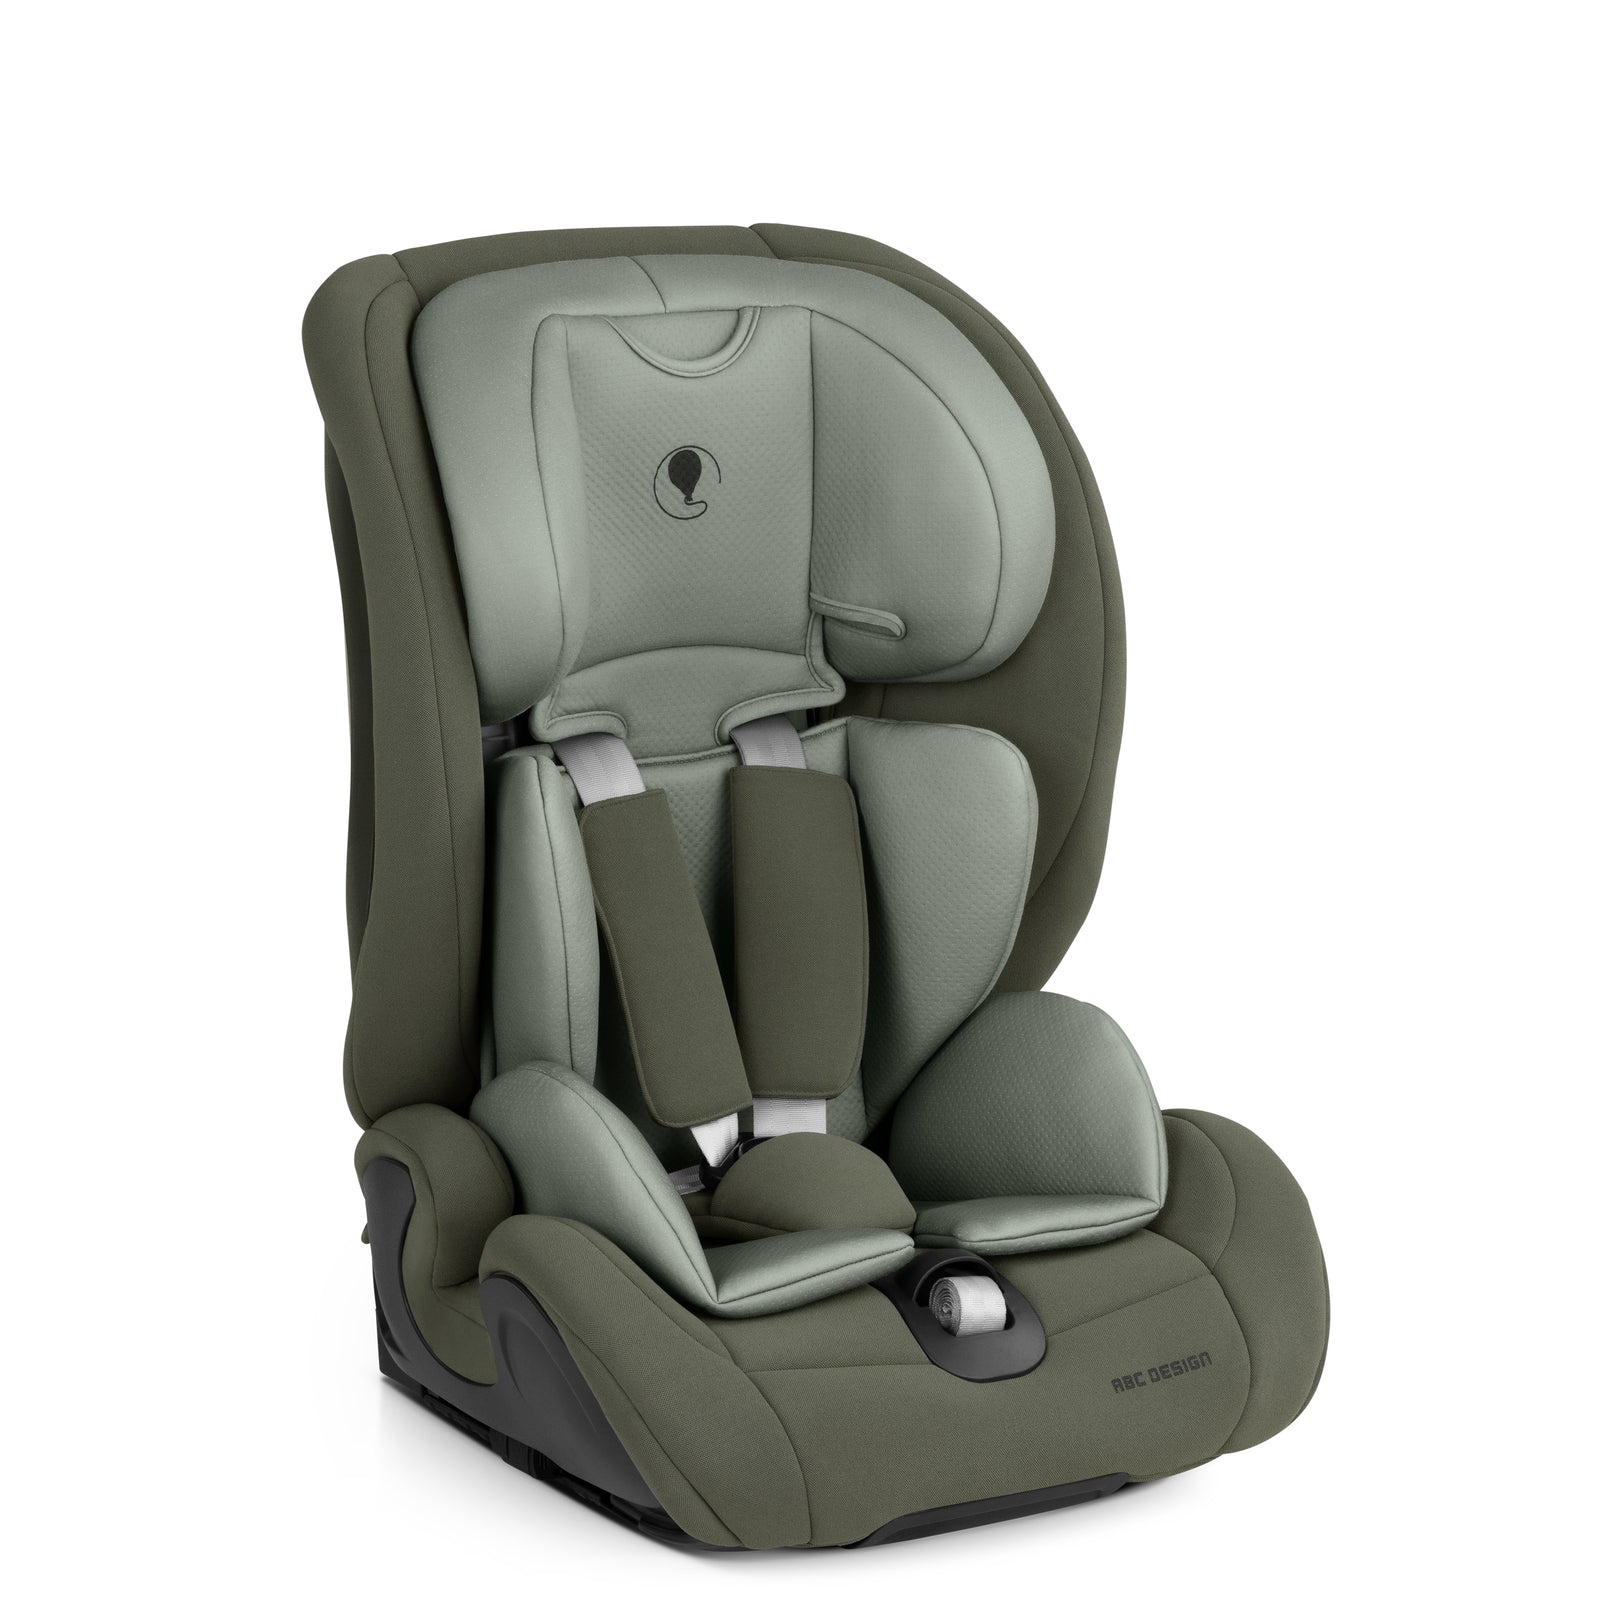 Erhöhung für Kindersitz Joie I-Spin 360 (grey flannel)